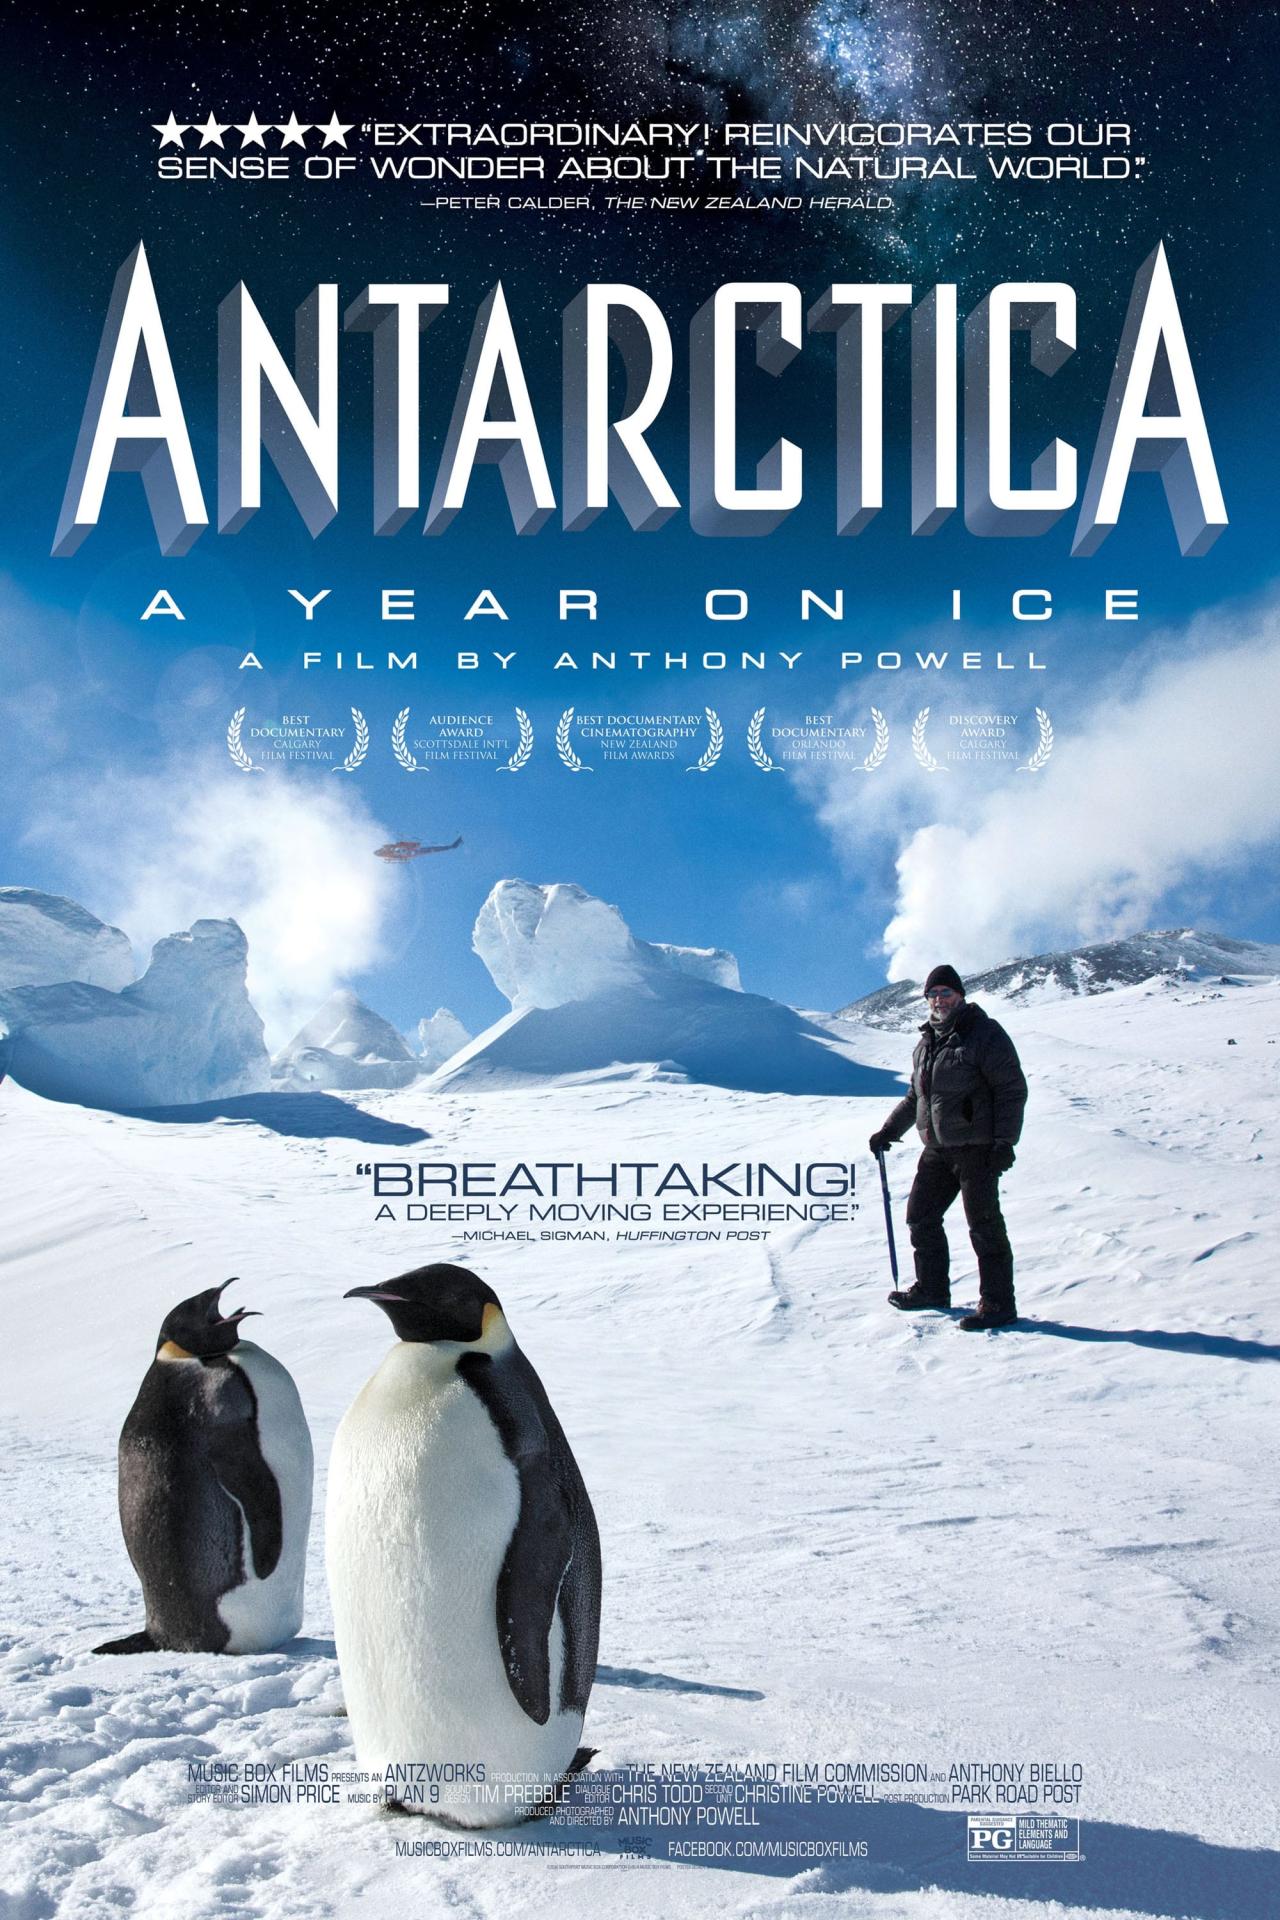 Antarctica - Une année sur la glace est-il disponible sur Netflix ou autre ?